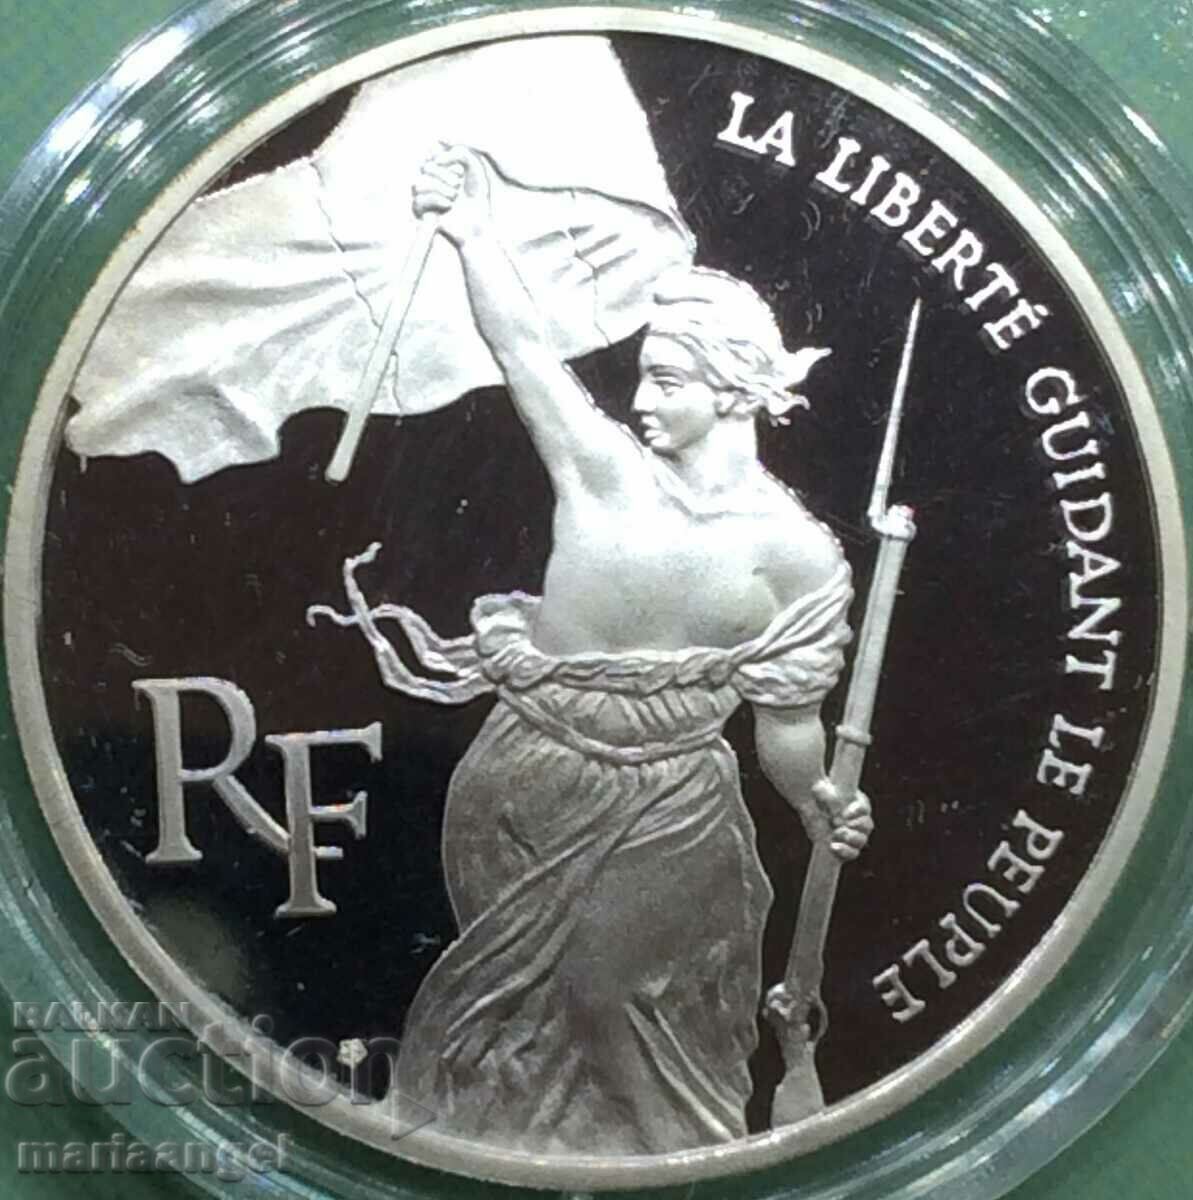 Franta 1993 100 Franci Certificat UNC PROOF Argint